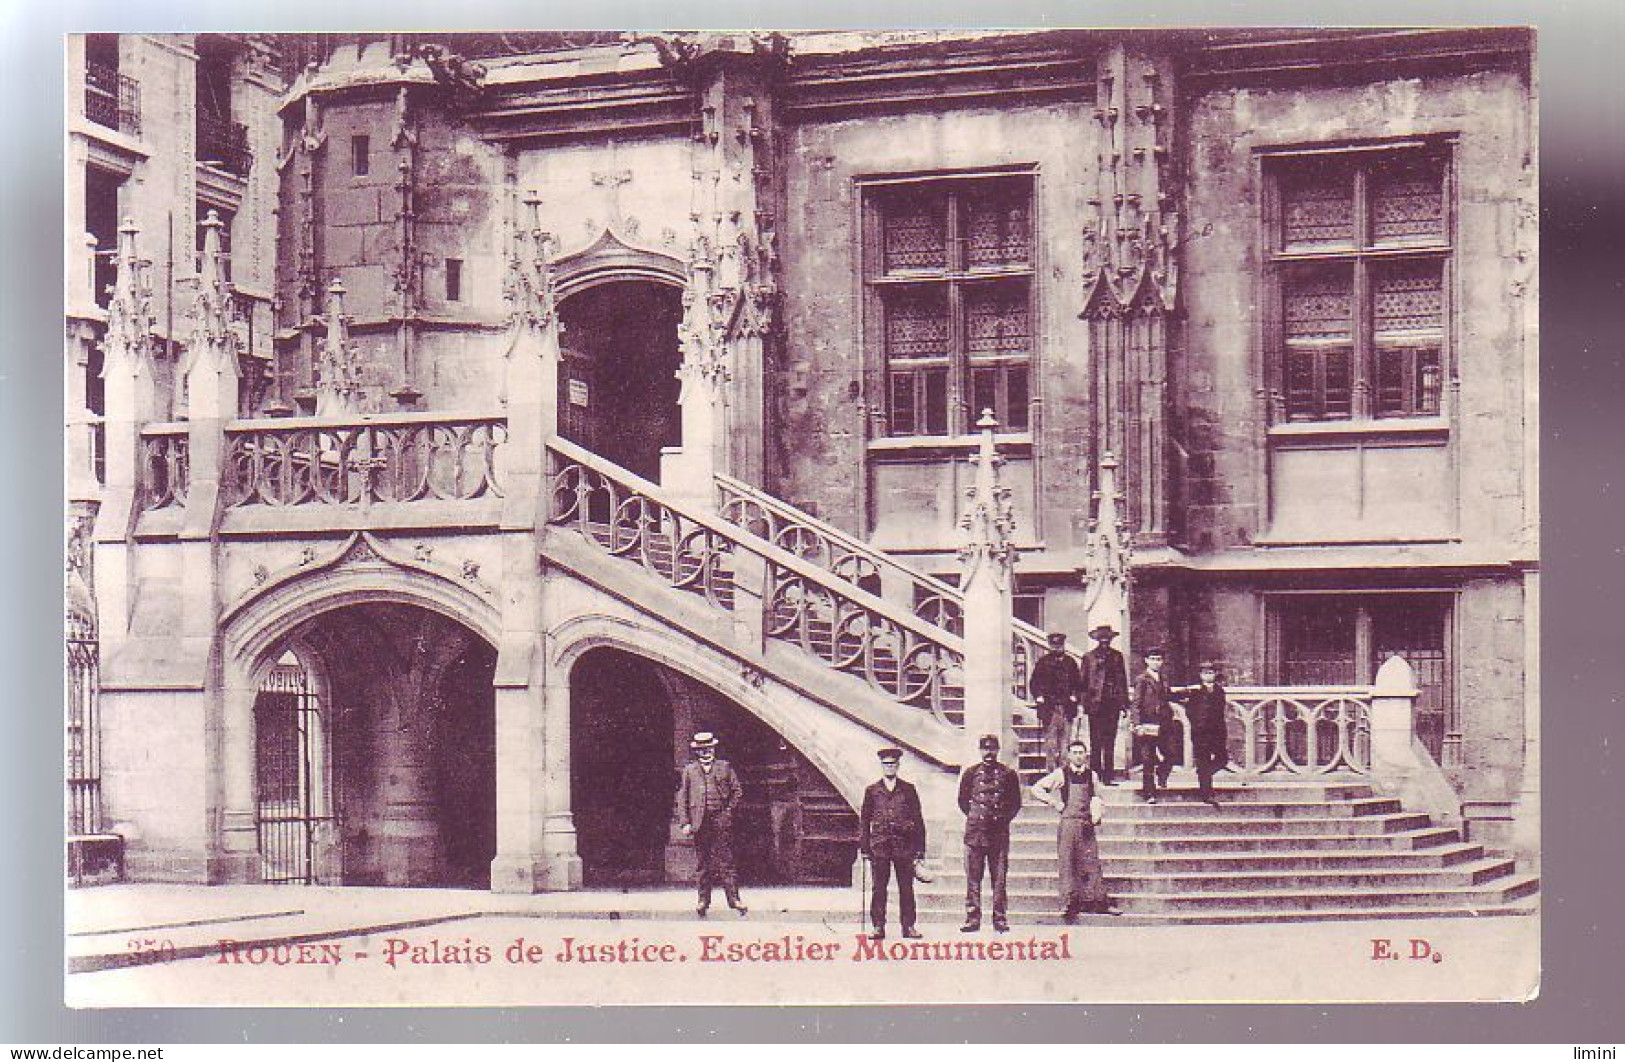 76 - ROUEN - PALAIS De JUSTICE - ANIMÉE - - Rouen